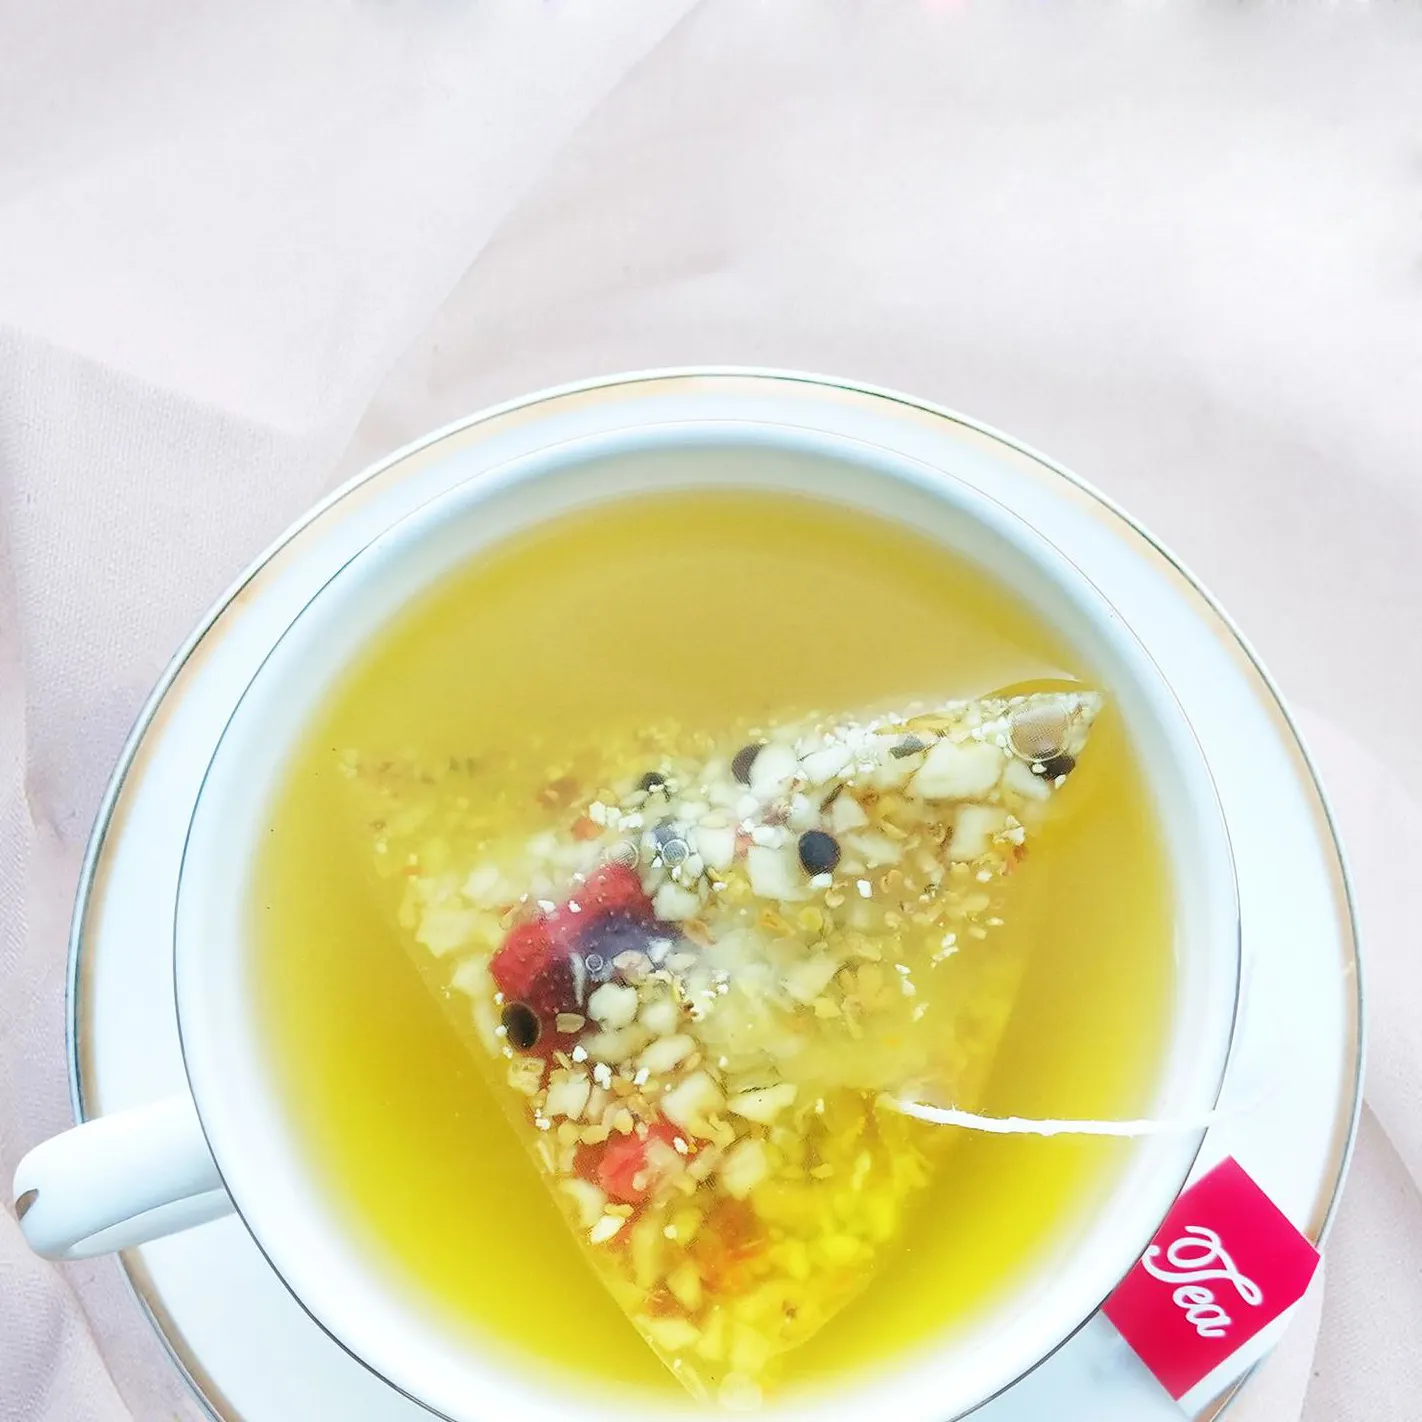 Private Label OEM Medicina Tradizionale Cinese Tè del Ginseng Secca Longan Bustina di Tè Per Alleviare Il Mal di testa E Overcomeing Vertigini